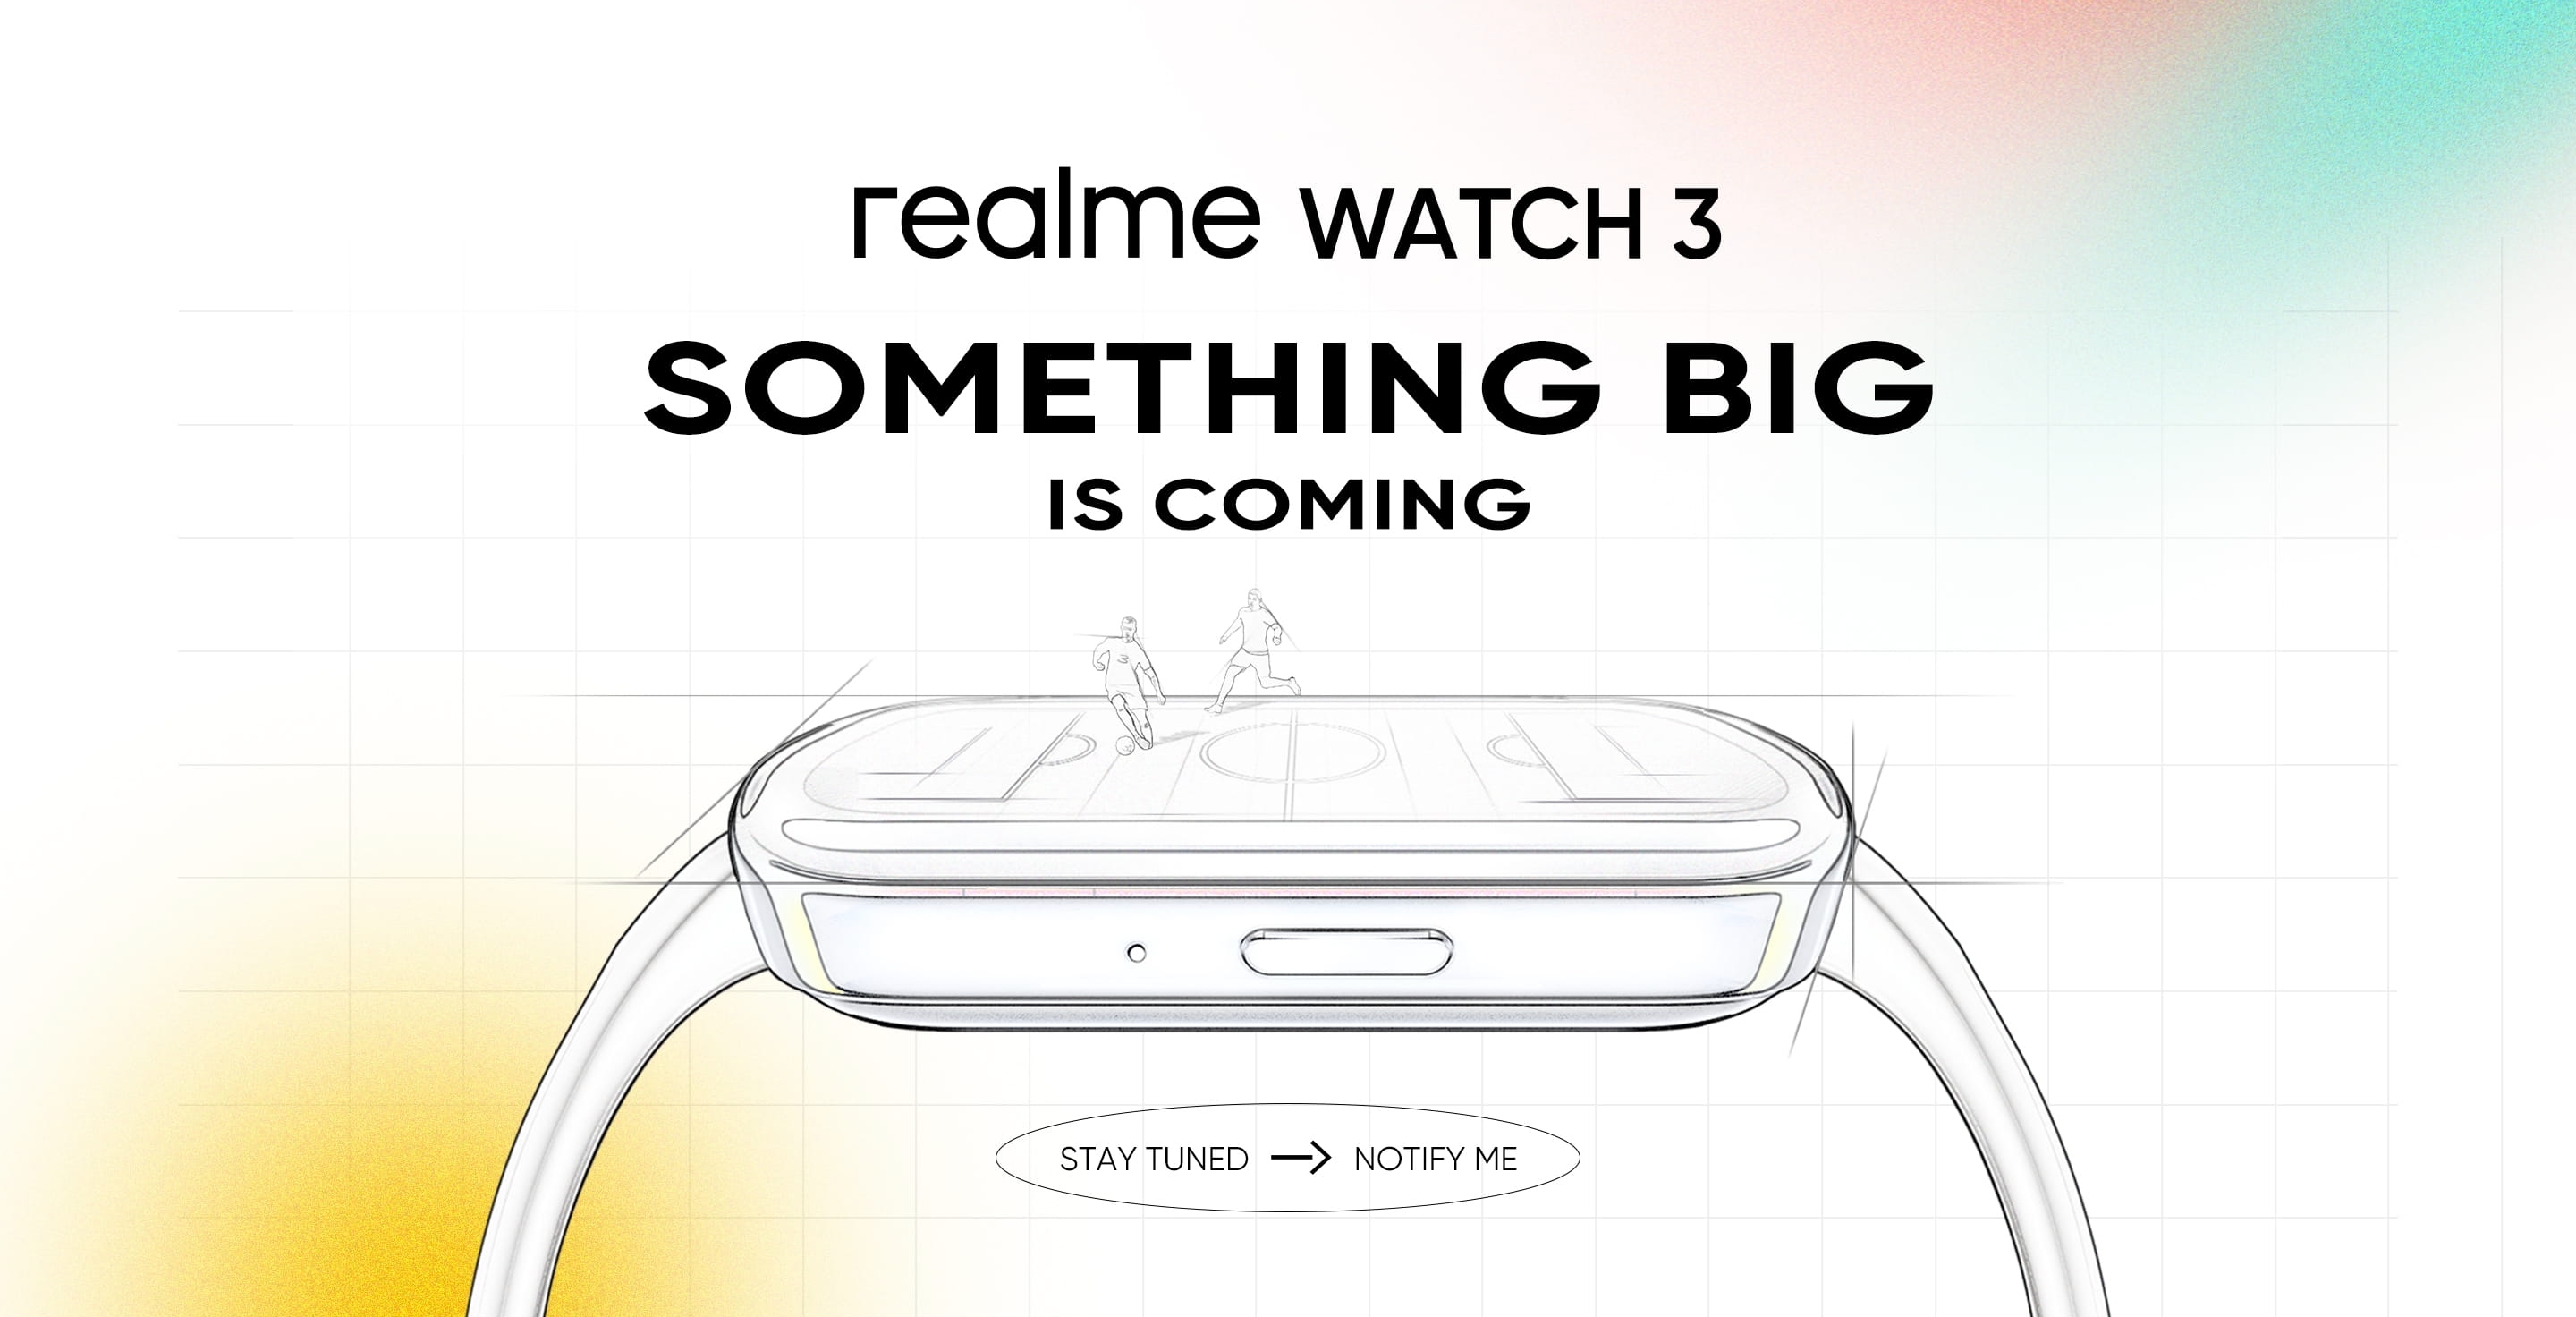 La Realme Watch 3, une smartwatch compatible avec les appels et dotée d'un écran plus grand, sera lancée le 18 juillet